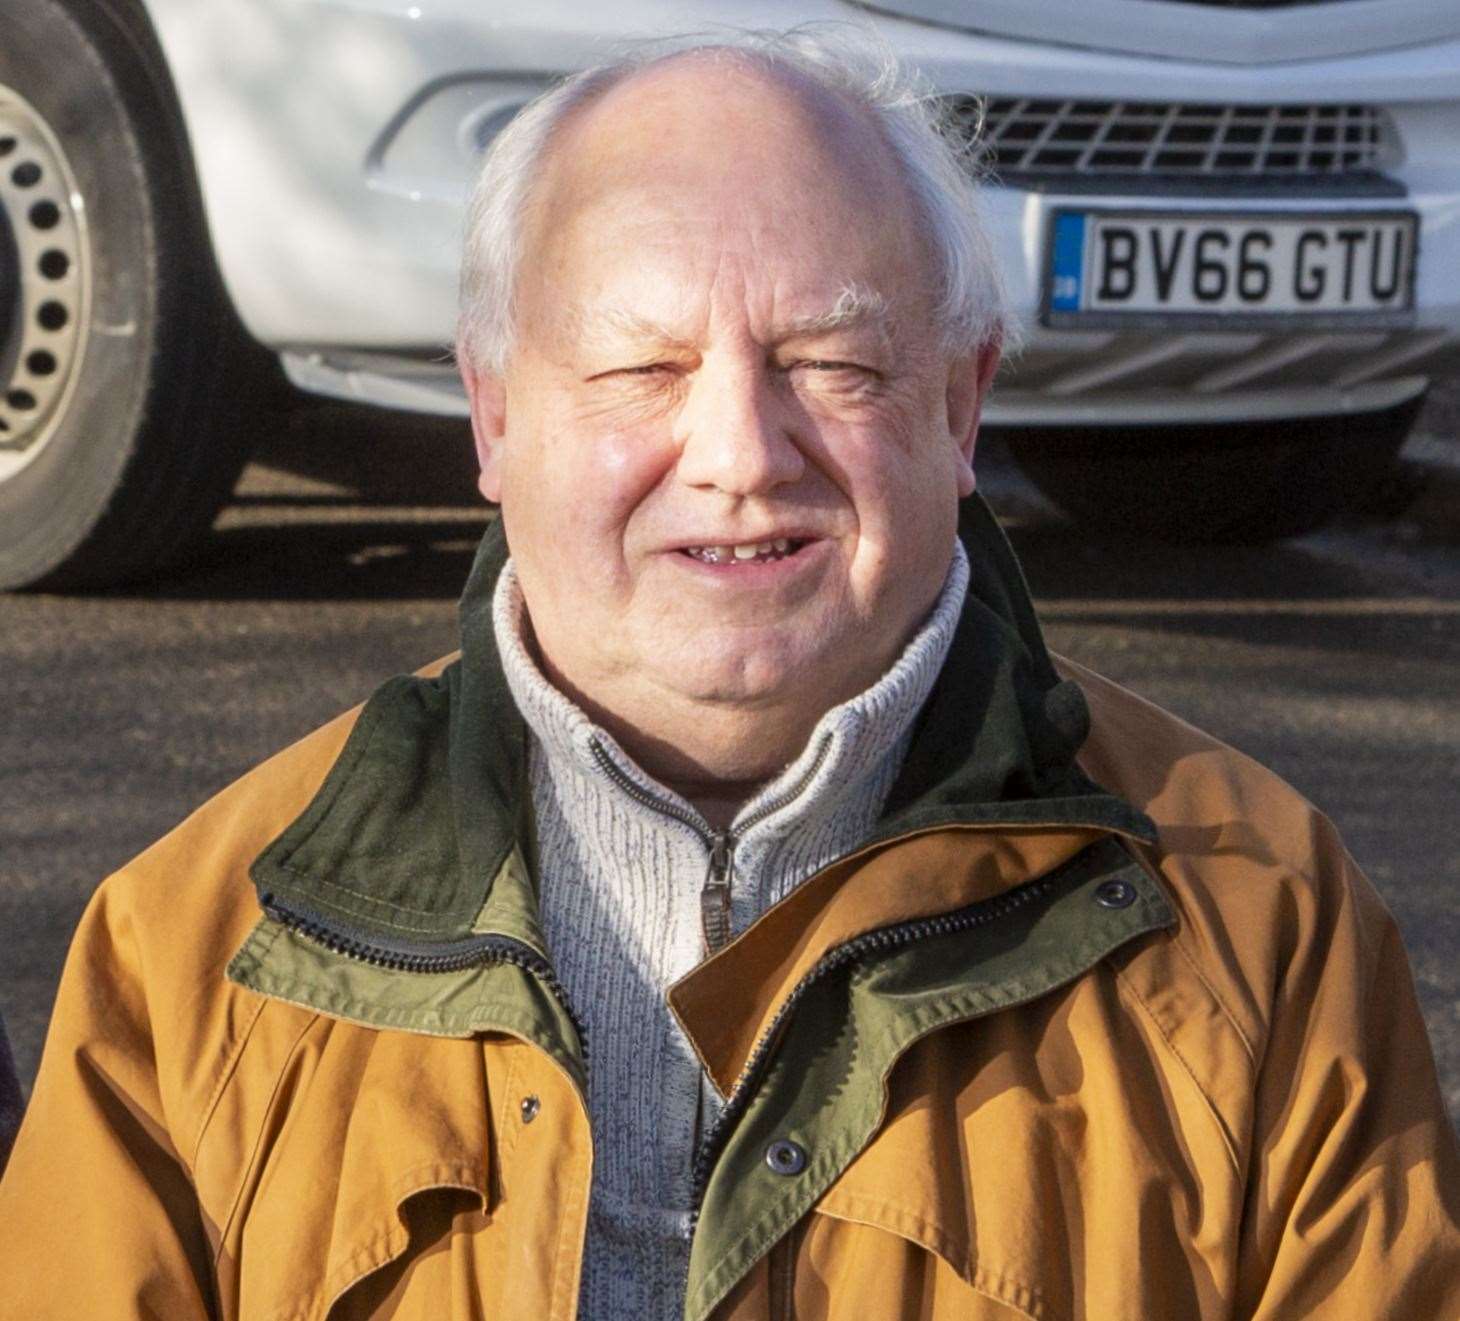 Senior Dover councillor Martin Bates